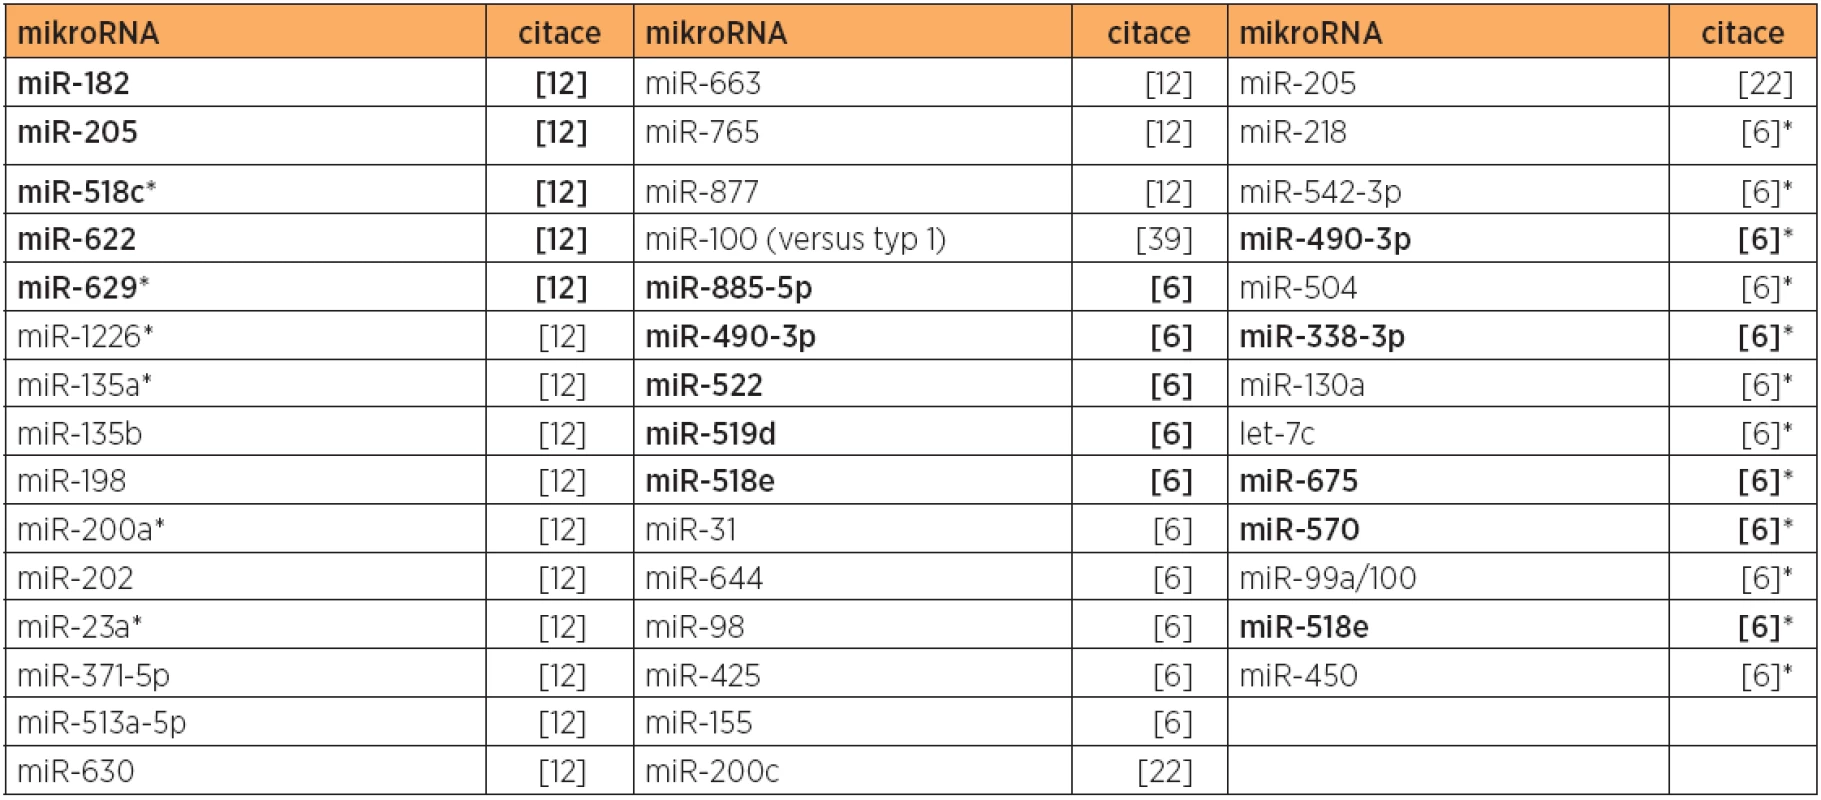 Zvýšená exprese mikroRNA u typu 2 versus normální endometrium, případně versus typ 1 (citace [39, 6*])